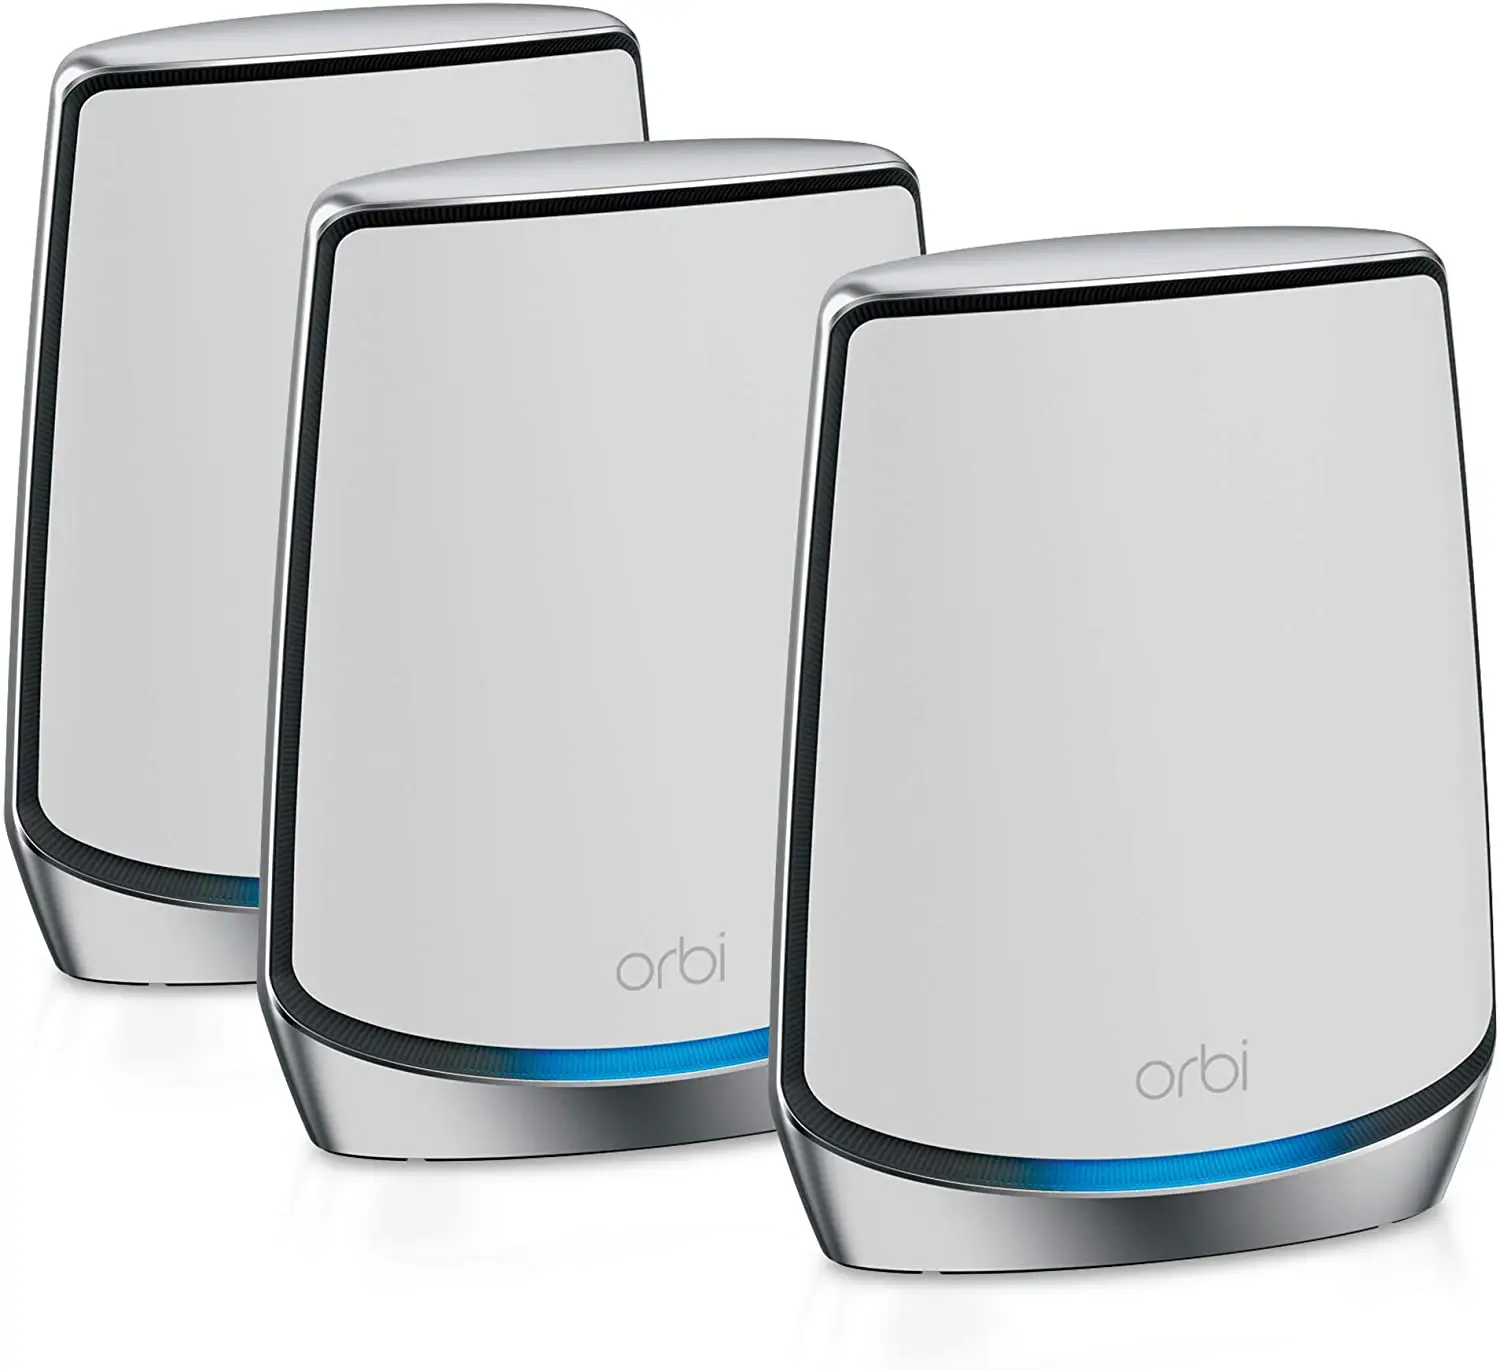 NETGEAR Orbi tüm ev üç bant örgü WiFi 6 sistemi (RBK853) yönlendirici ile 2 uydu uzatıcılar örgü AX6000 WiFi